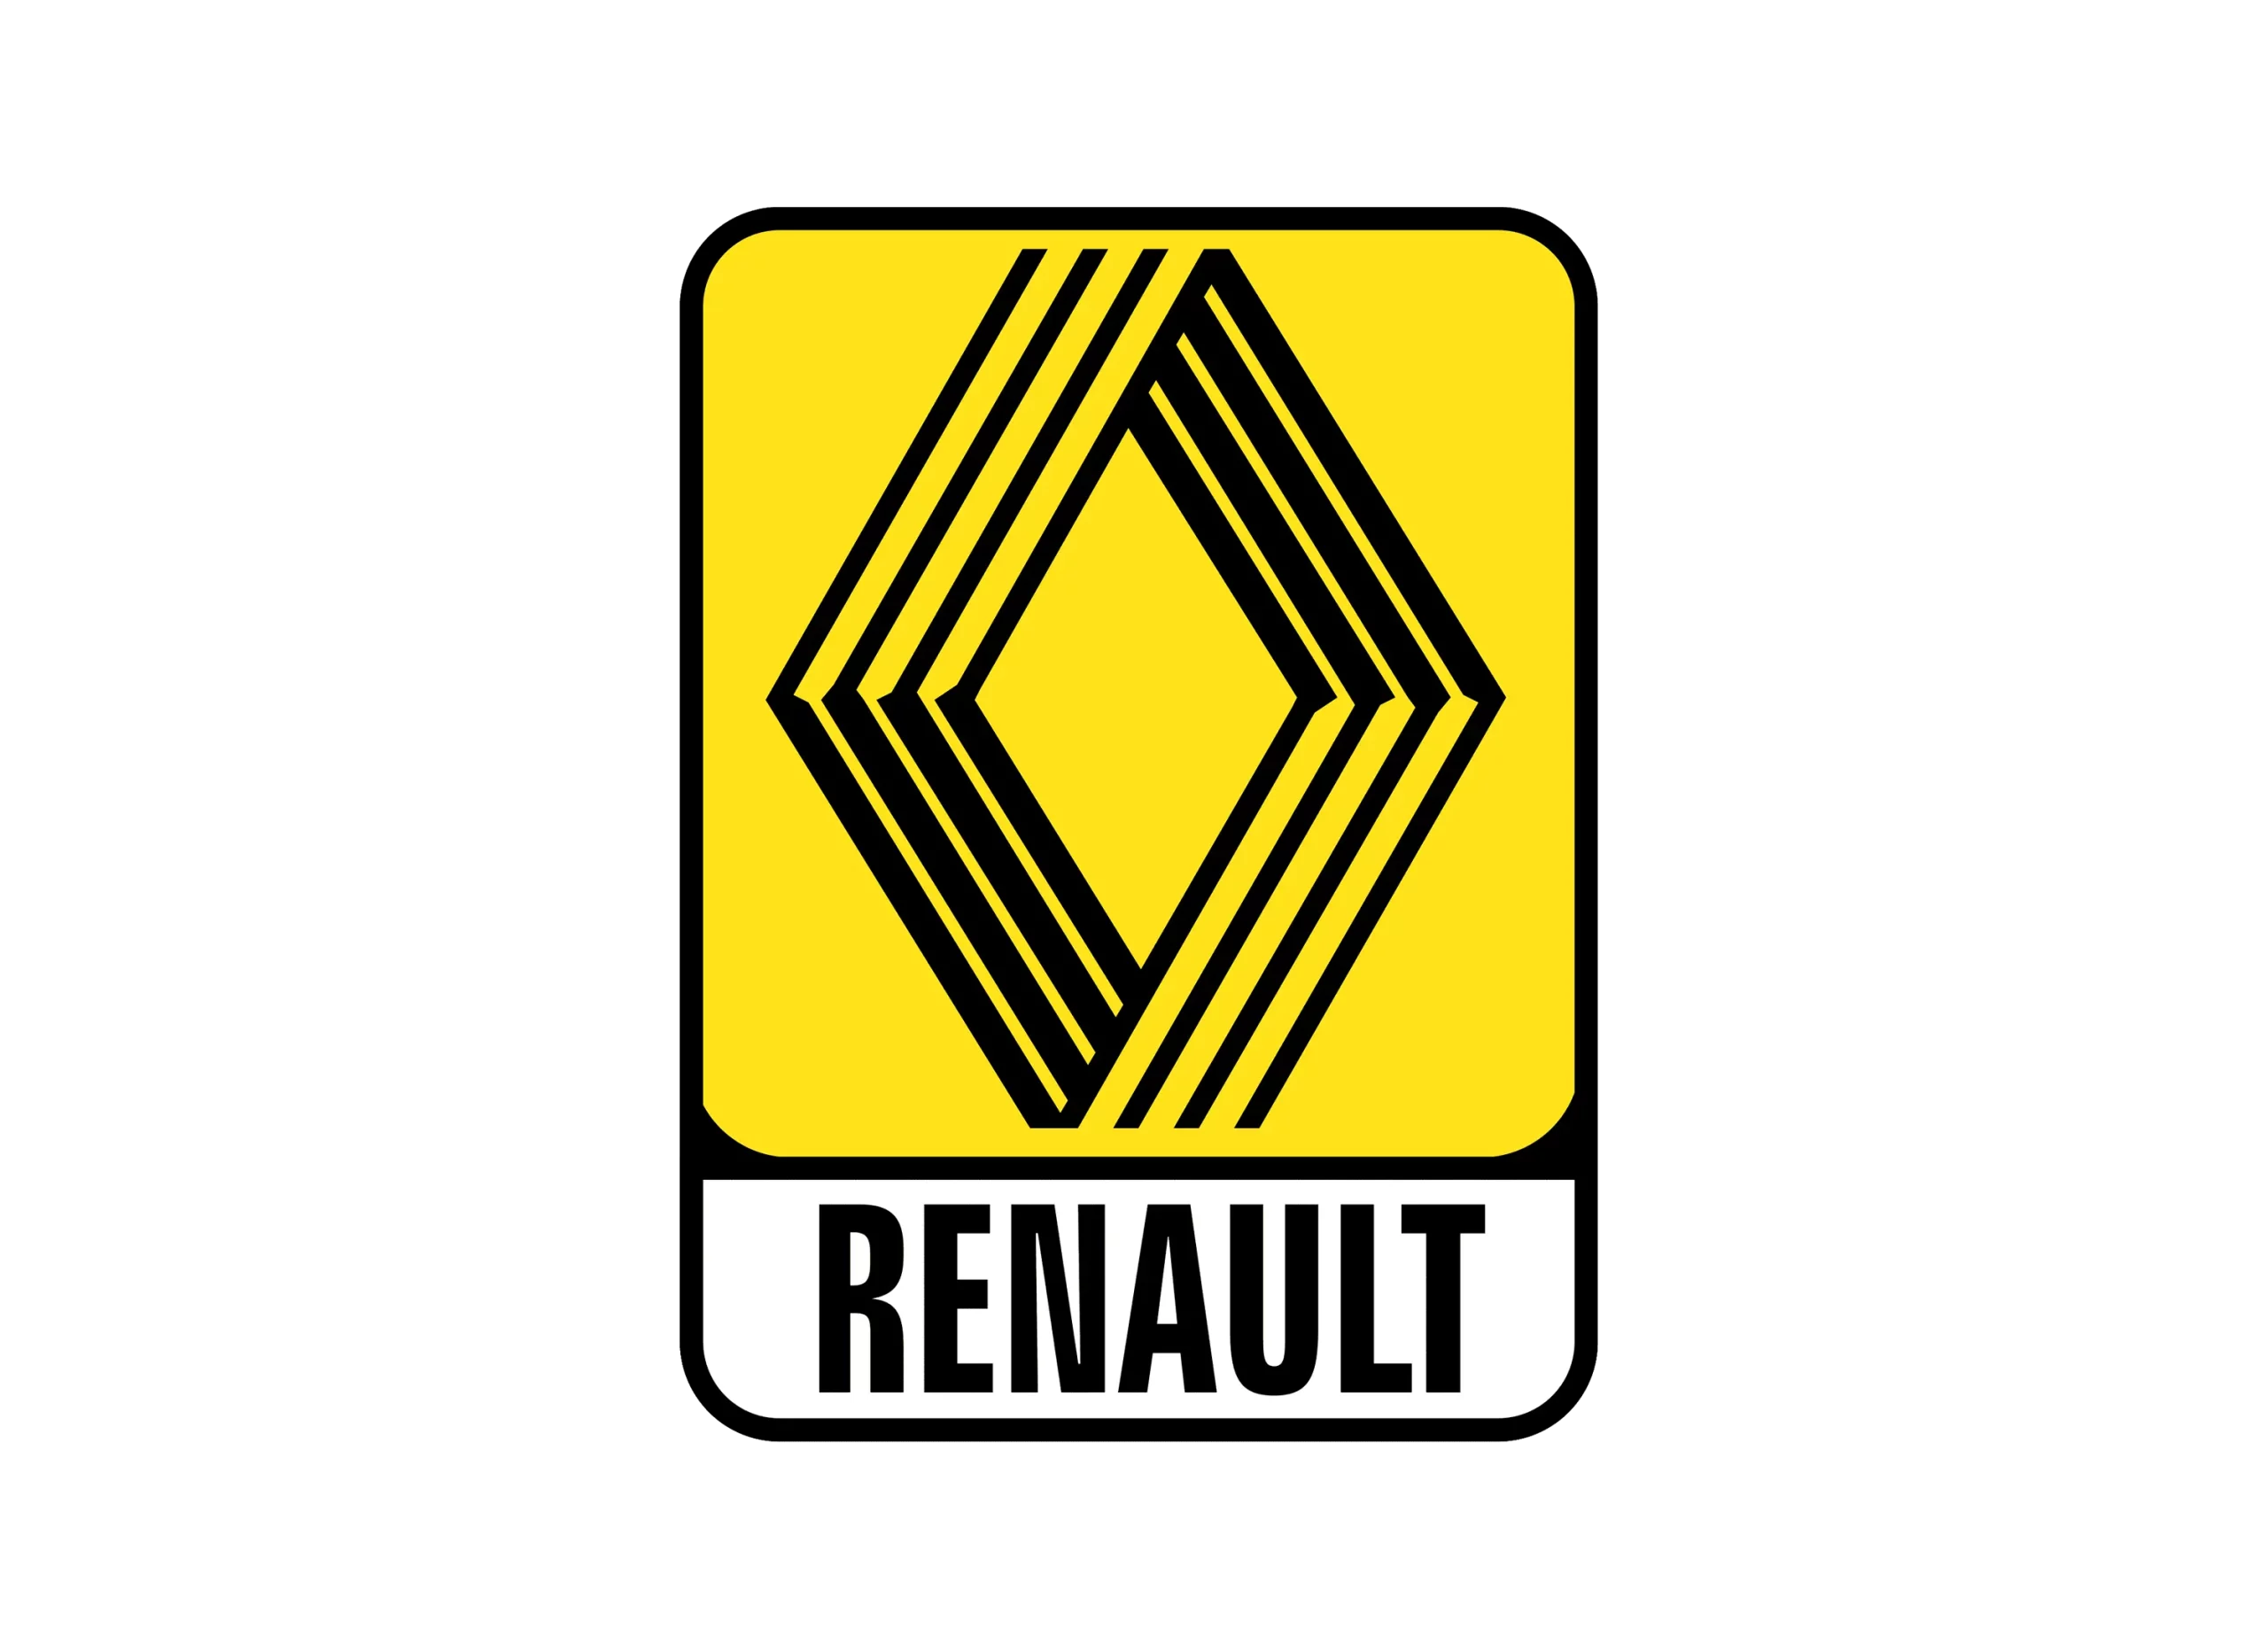 Renault logo 1973-1982